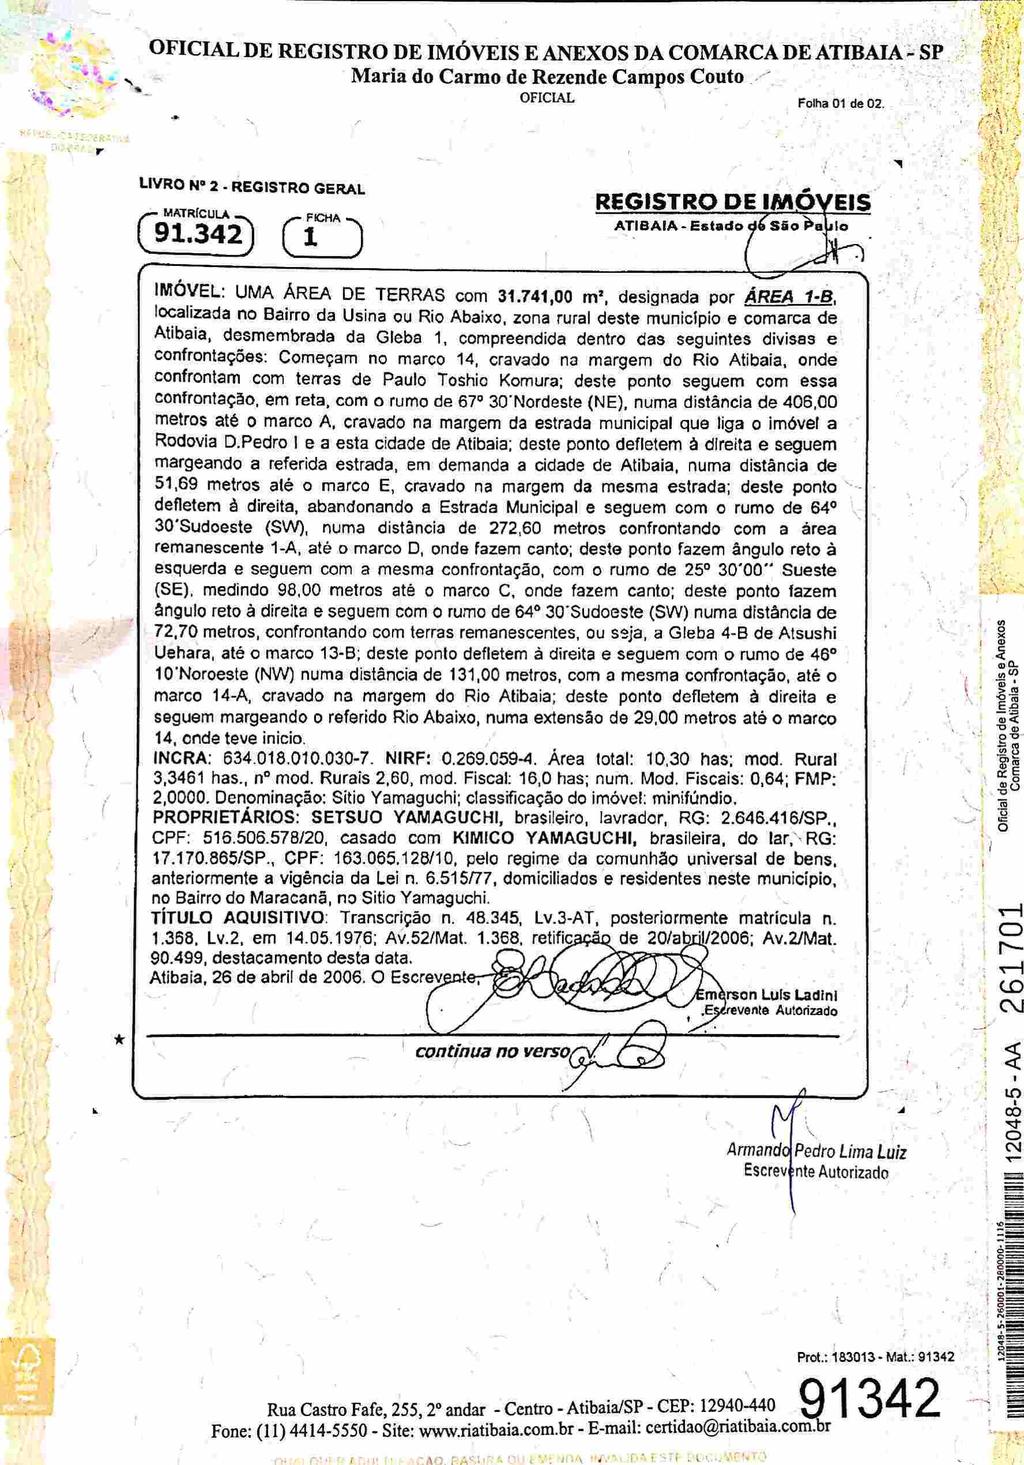 fls. 46 Scanned by CamScanner Este documento é cópia do original, assinado digitalmente por FERNANDO ALVARENGA RODRIGUES e Tribunal de Justica do Estado de Sao Paulo, protocolado em 08/12/2016 às